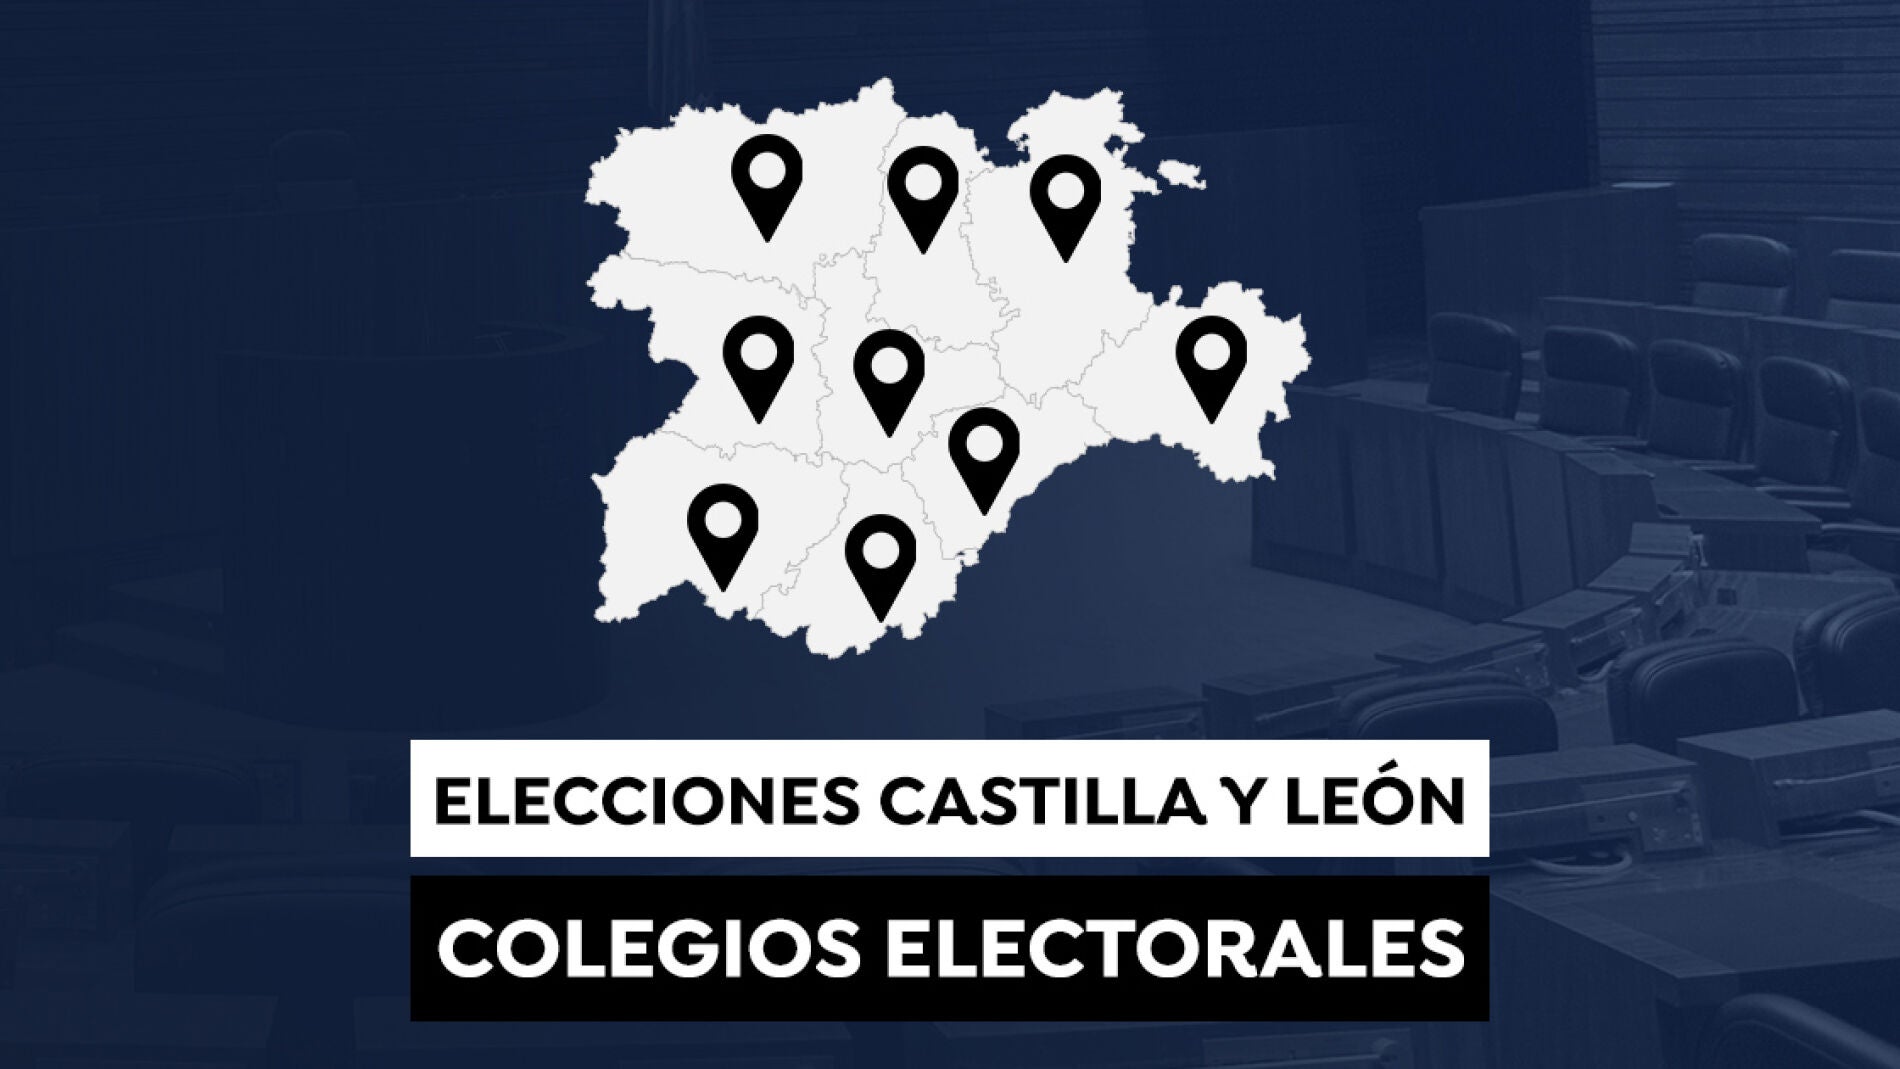 Horario Elecciones Castilla y León: ¿A qué hora abren los colegios y hay franjas horarias por el Covid?